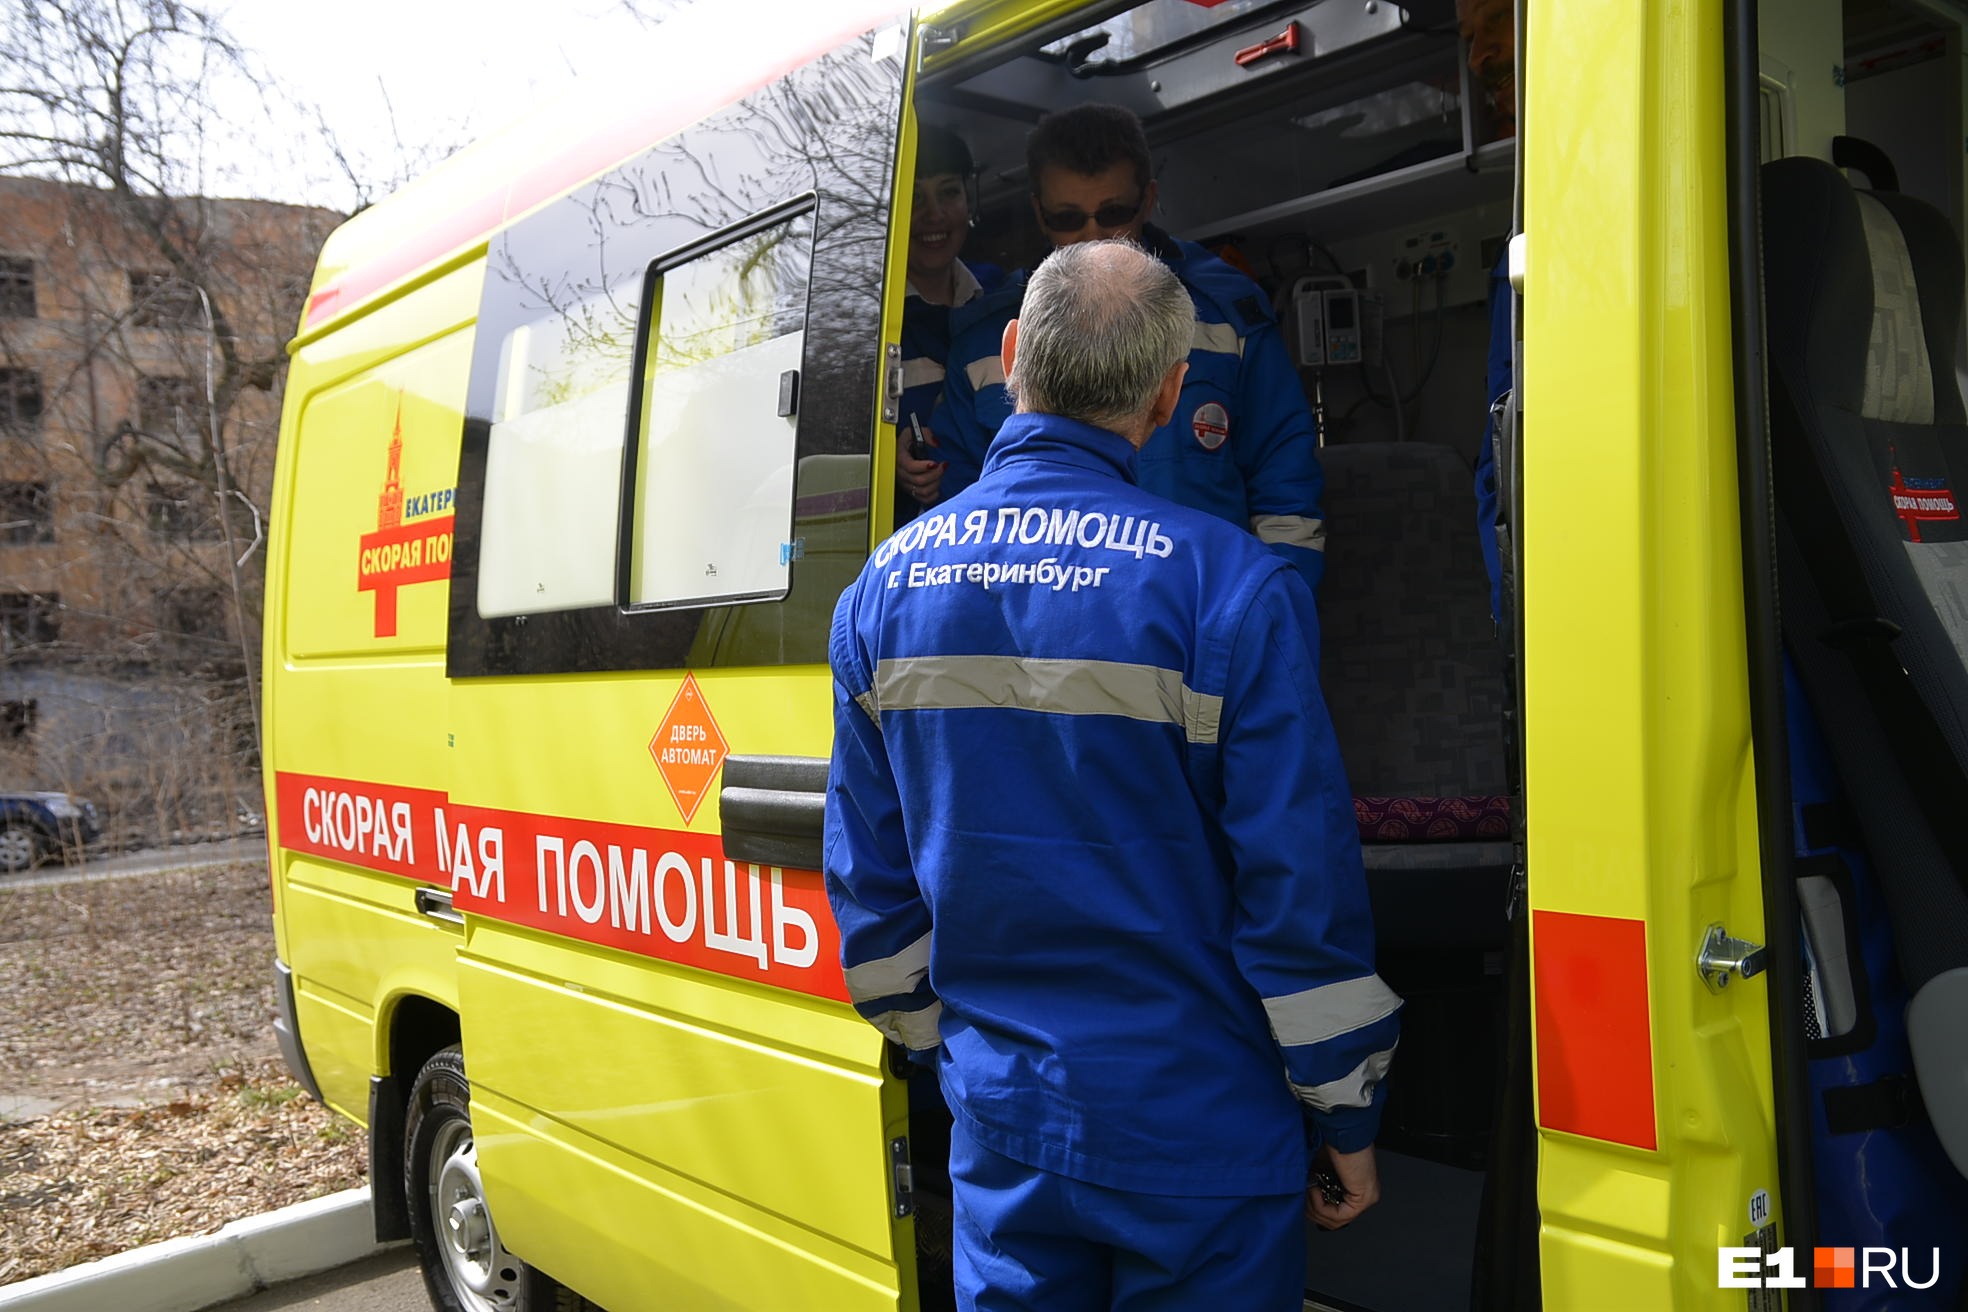 Двое погибли, четверо пострадали: в ГИБДД рассказали подробности жуткой аварии на трассе в Кузбассе